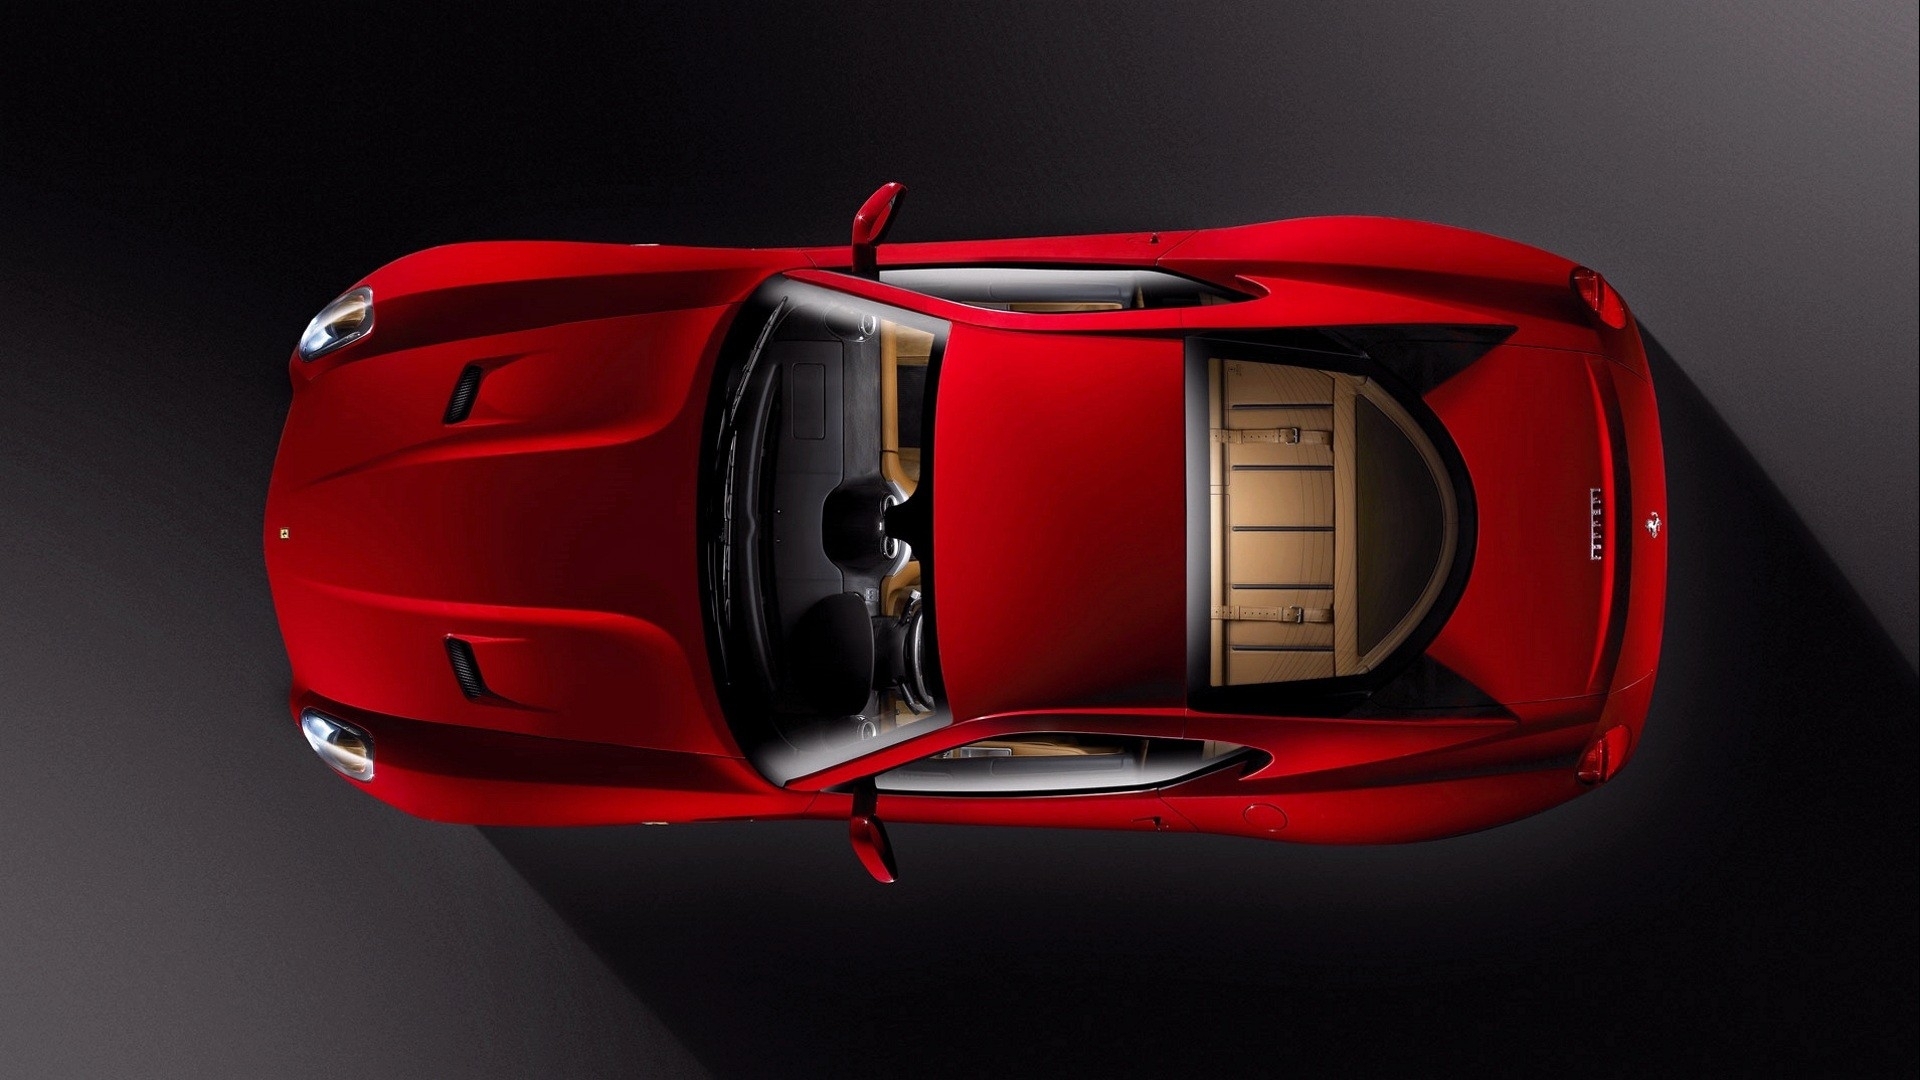 Télécharger des fonds d'écran Ferrari 599 Gtb HD